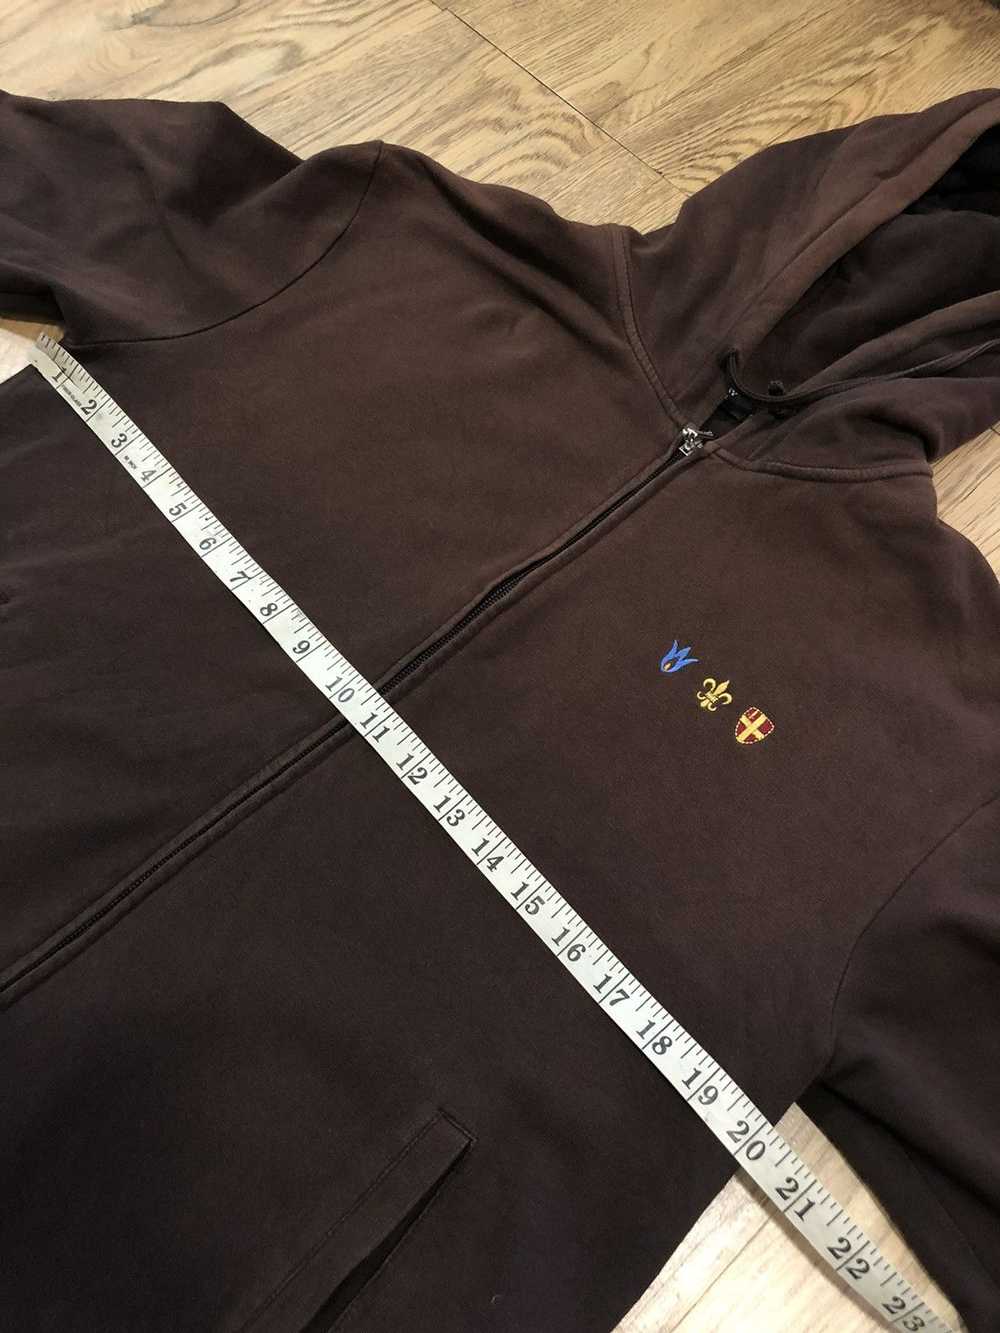 Burberry Burberry black label zip up hoodie - image 7